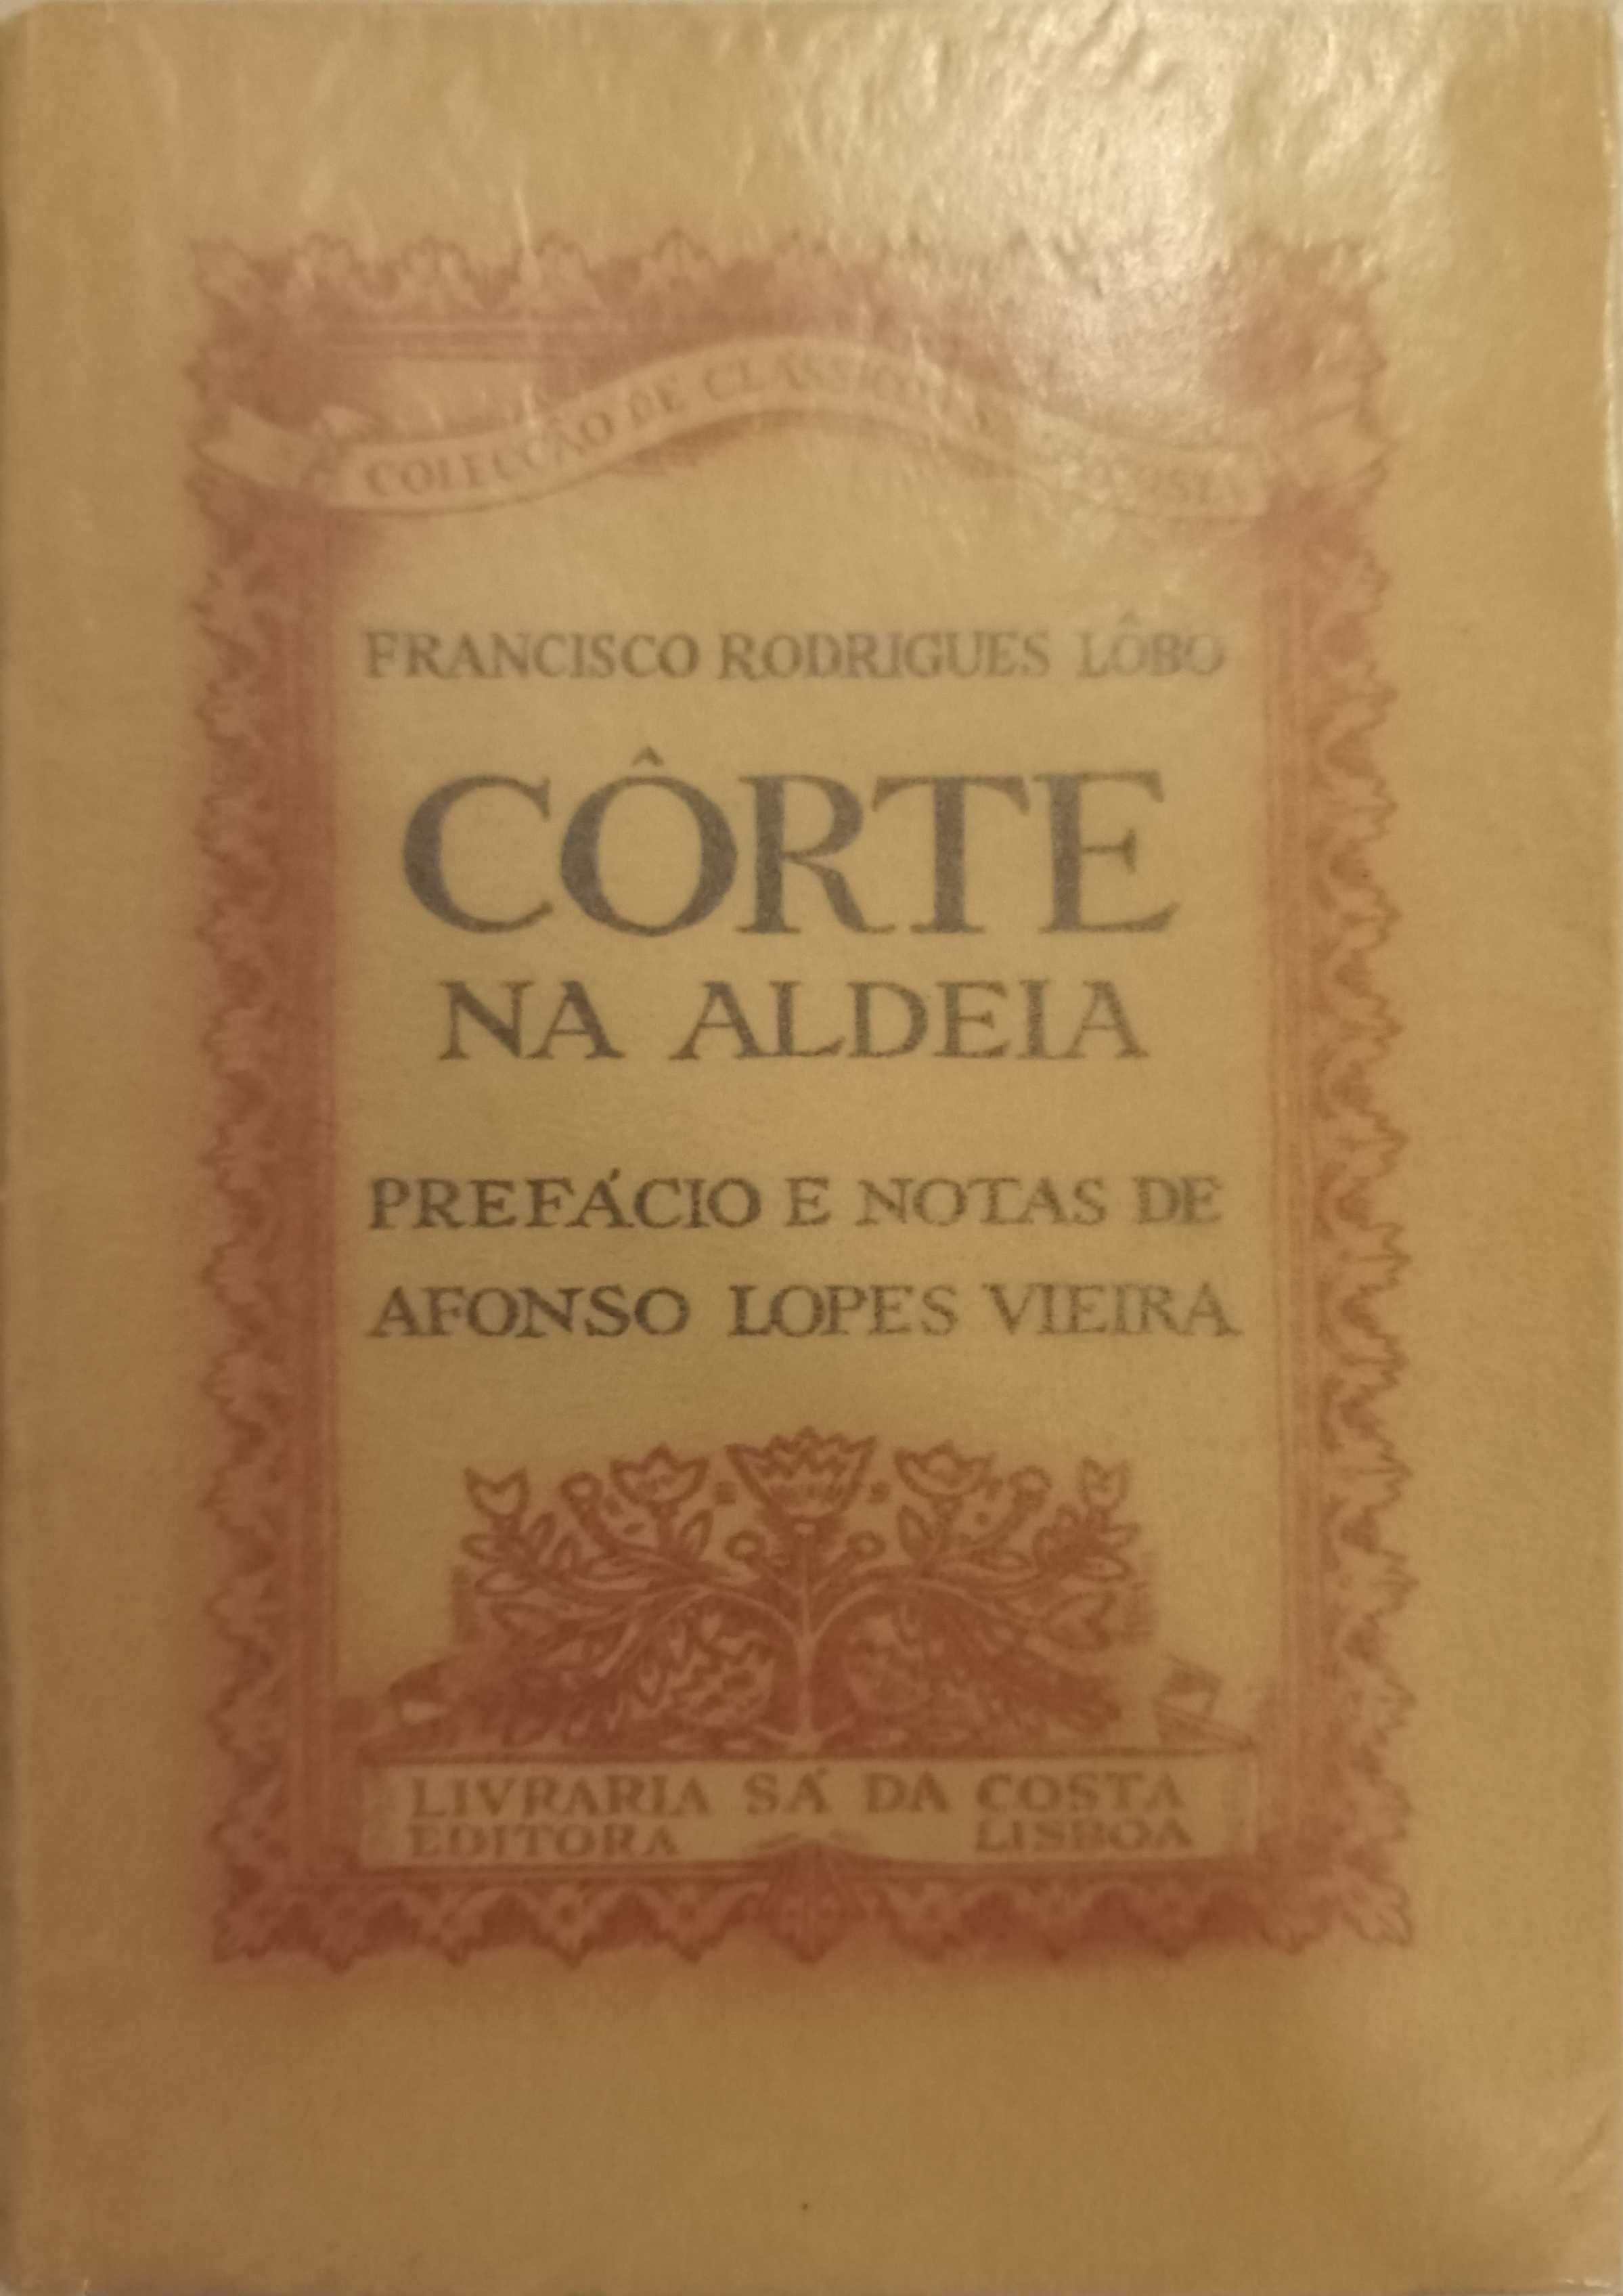 Côrte na Aldeia, Francisco Rodrigues Lôbo